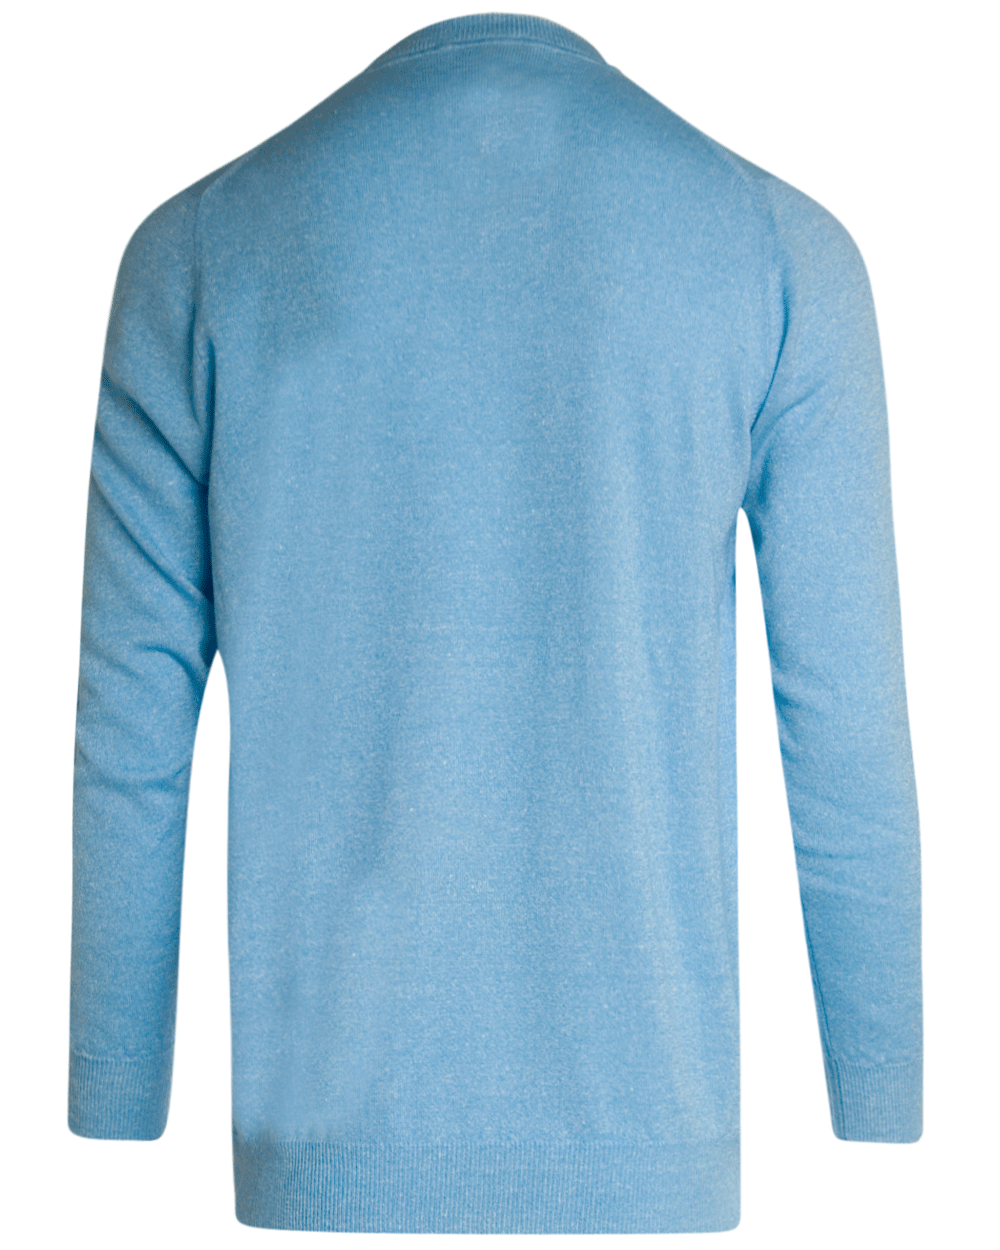 Electric Blue Cashmere Crewneck Sweater